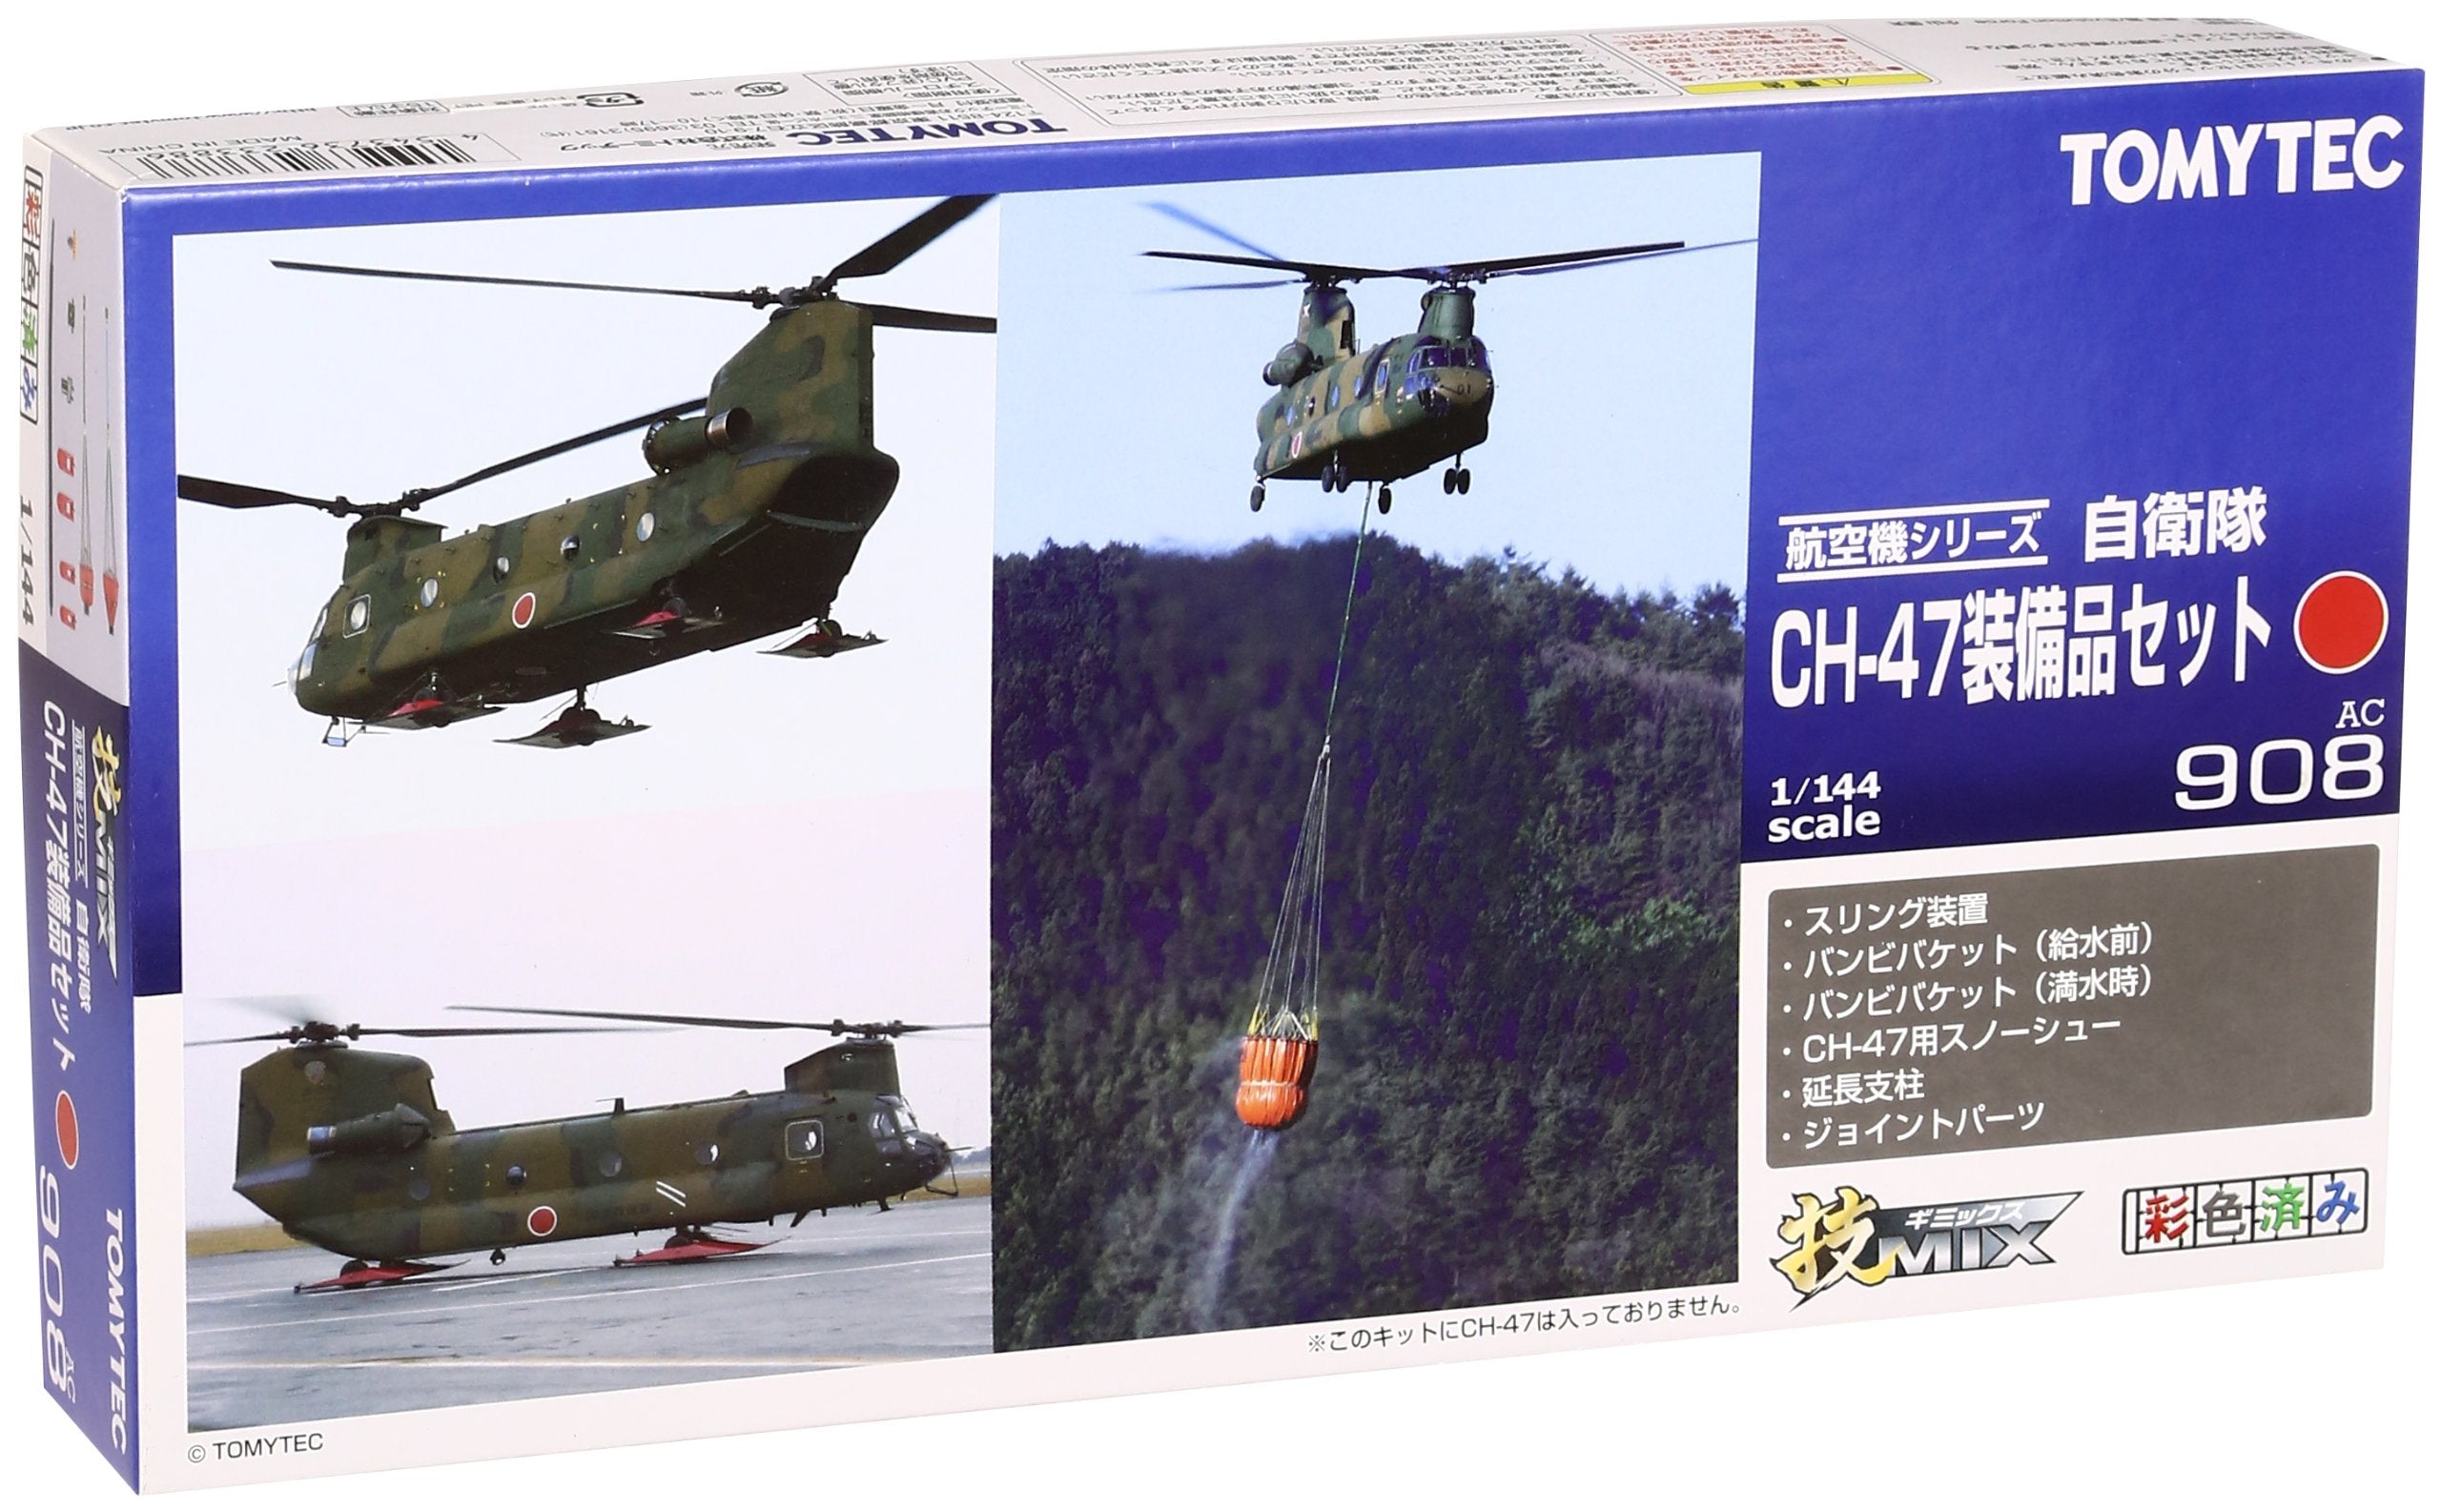 Tomytec Gi Mix Ac908 - High-Quality CH-47 Equipment Set